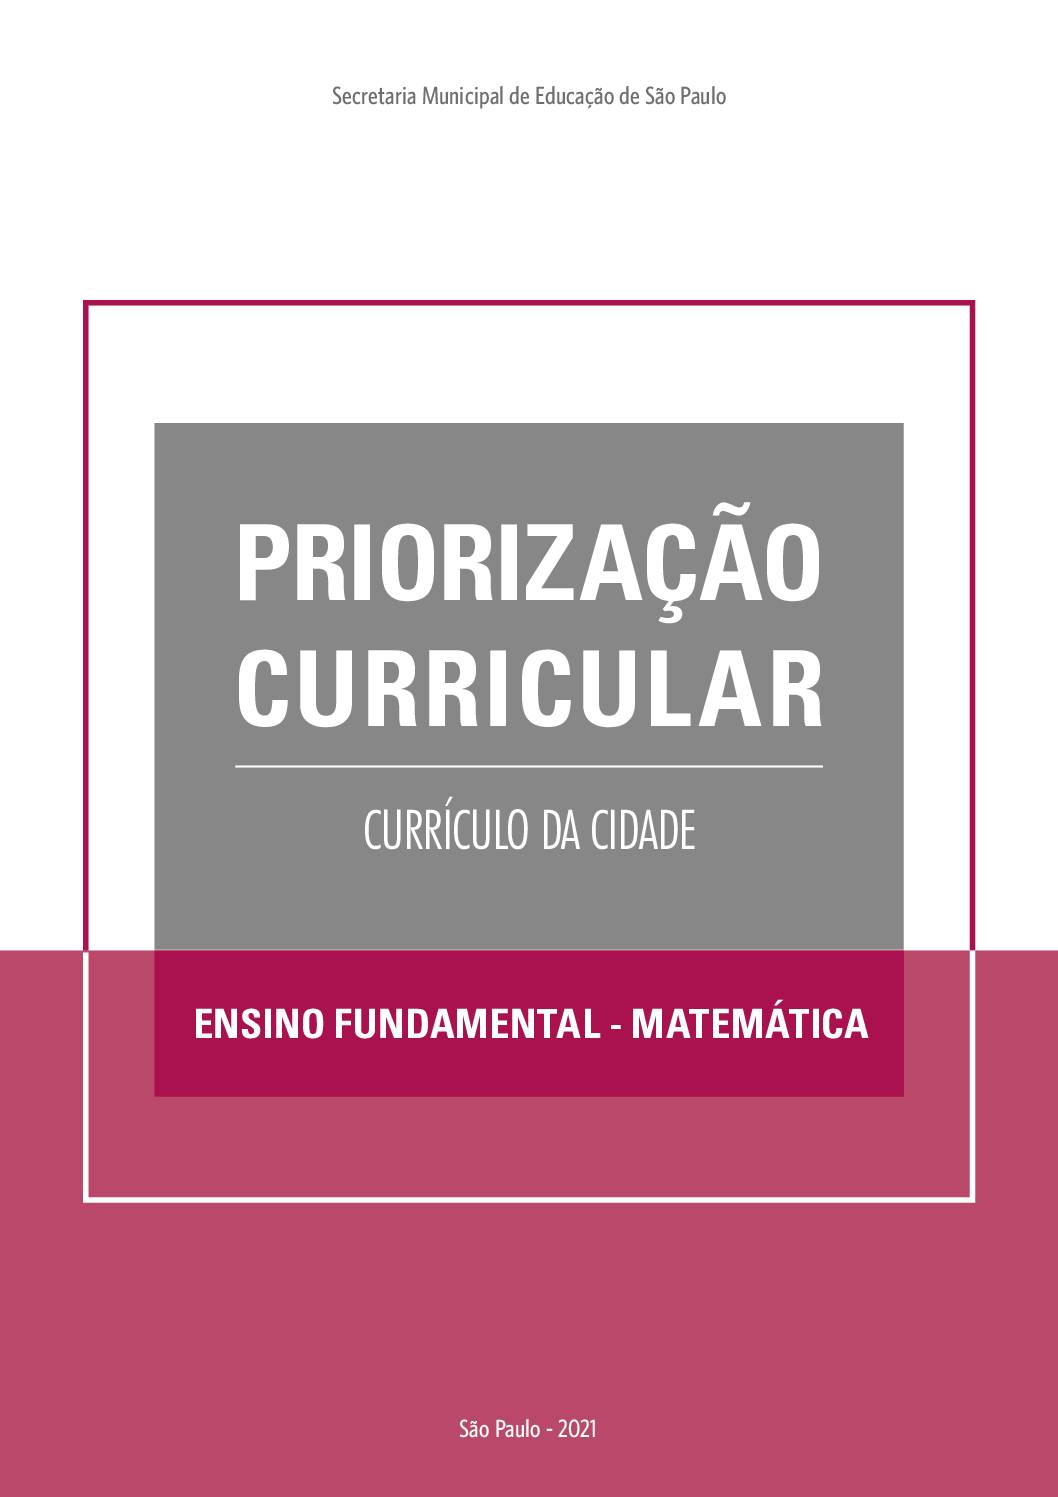 Publicação que apresenta os objetivos de aprendizagem prioritários do Currículo da Cidade de Matemática para o Ensino Fundamental.